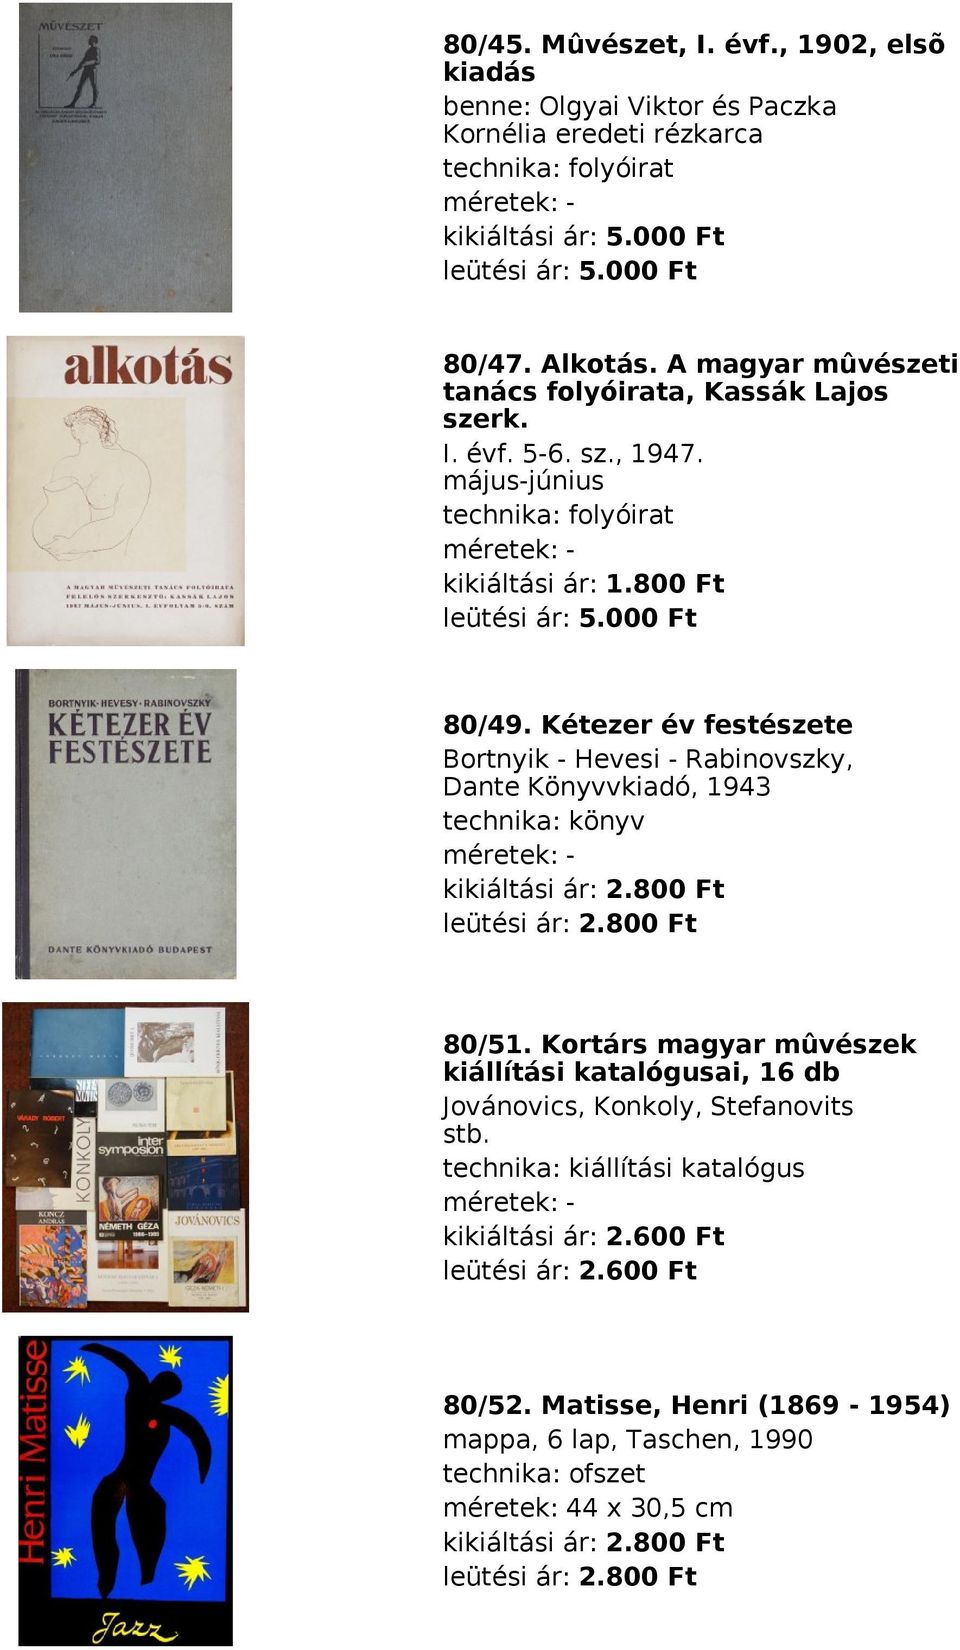 Kétezer év festészete Bortnyik - Hevesi - Rabinovszky, Dante Könyvvkiadó, 1943 technika: könyv méretek: kikiáltási ár: 2.800 Ft leütési ár: 2.800 Ft 80/51.